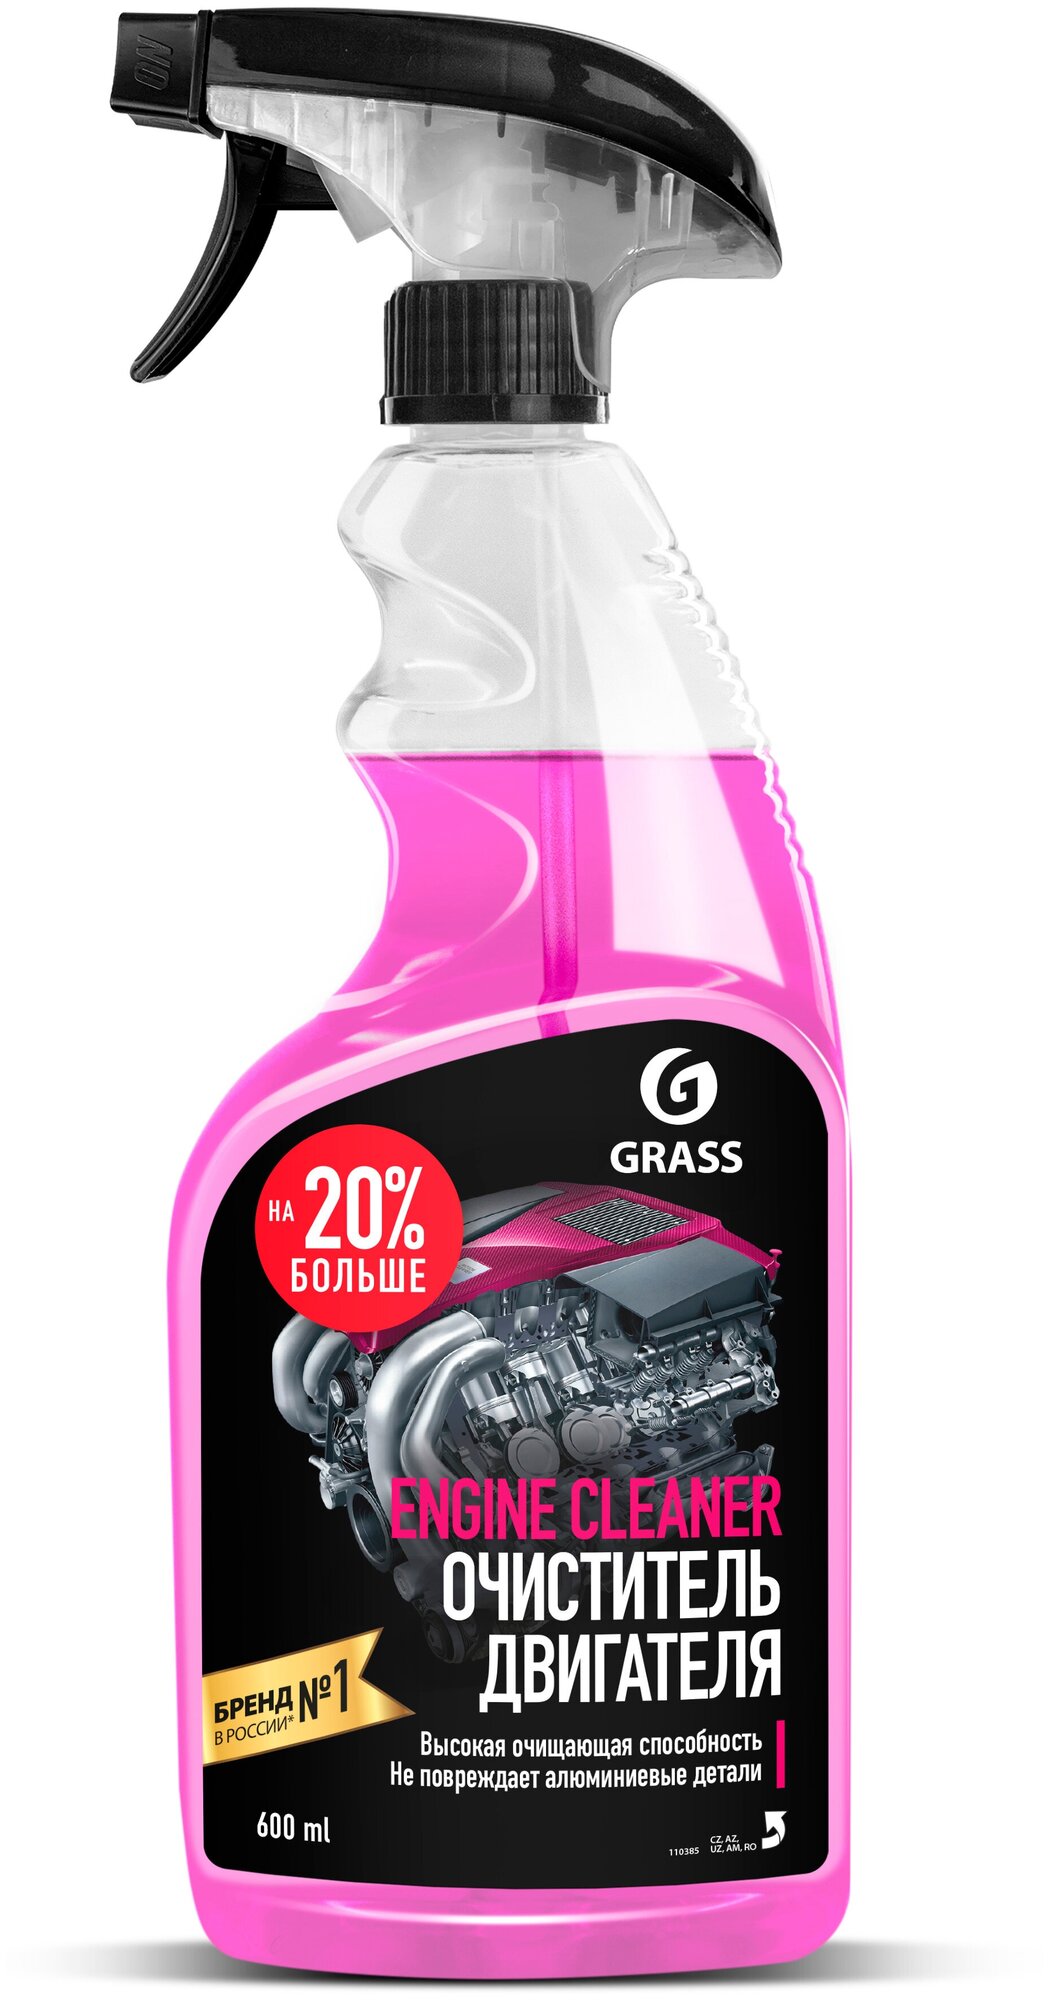 GRASS Очиститель двигателя Engine Cleaner 600 мл